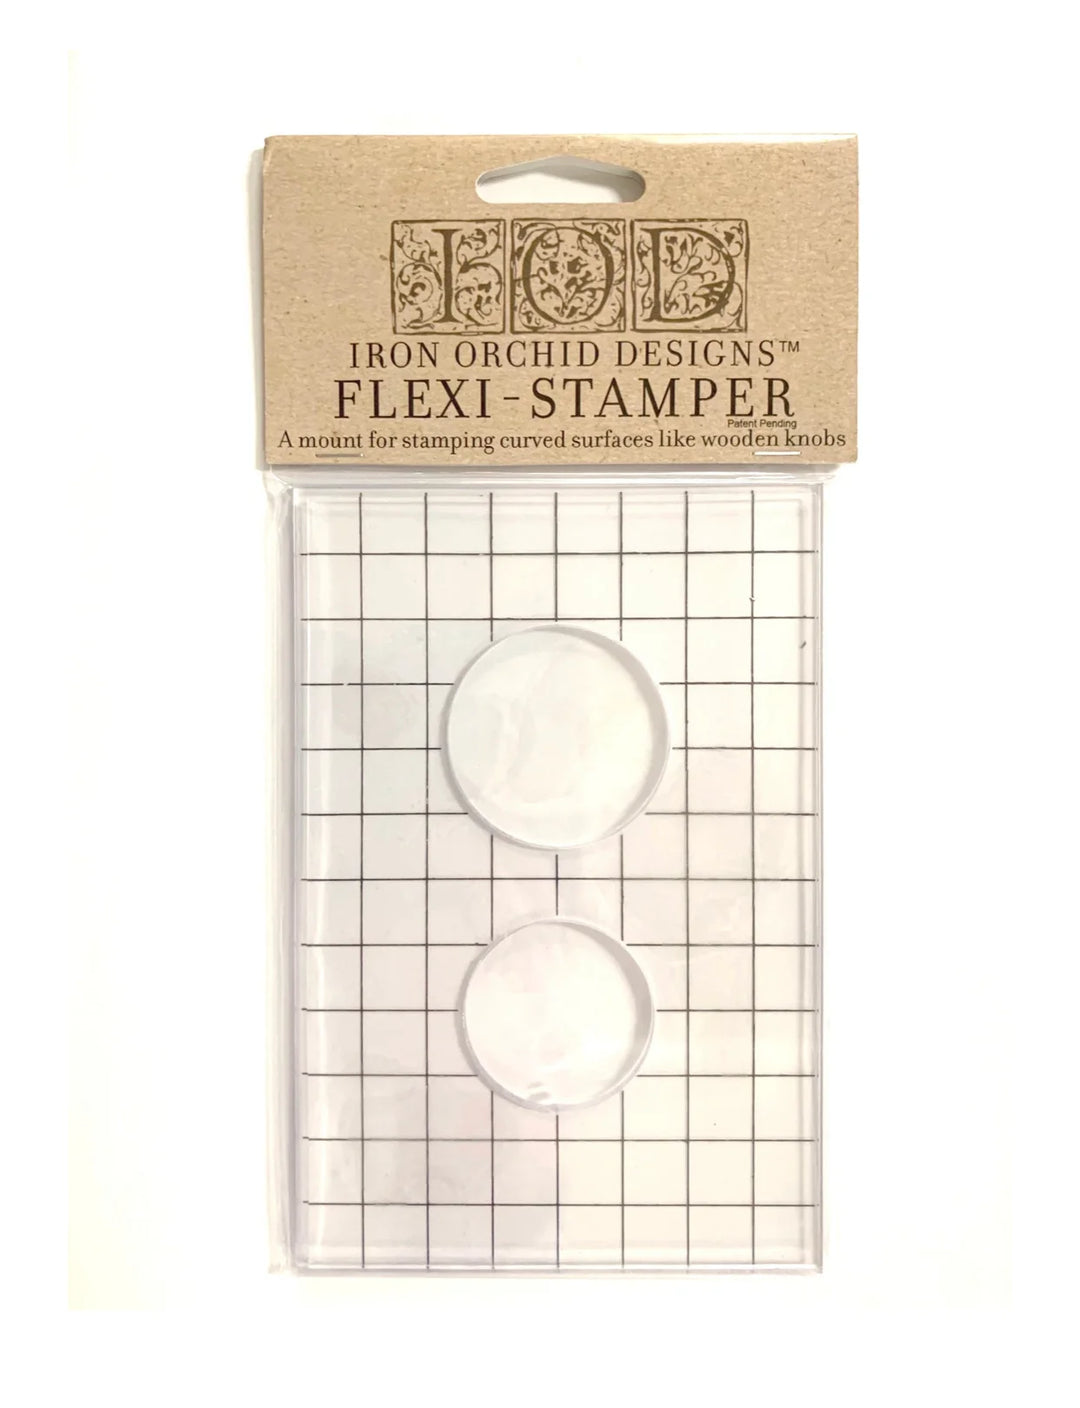 FLEXI-STAMPER by IOD (4"x6", 10.16cm x 15.24cm) - Rustic Farmhouse Charm